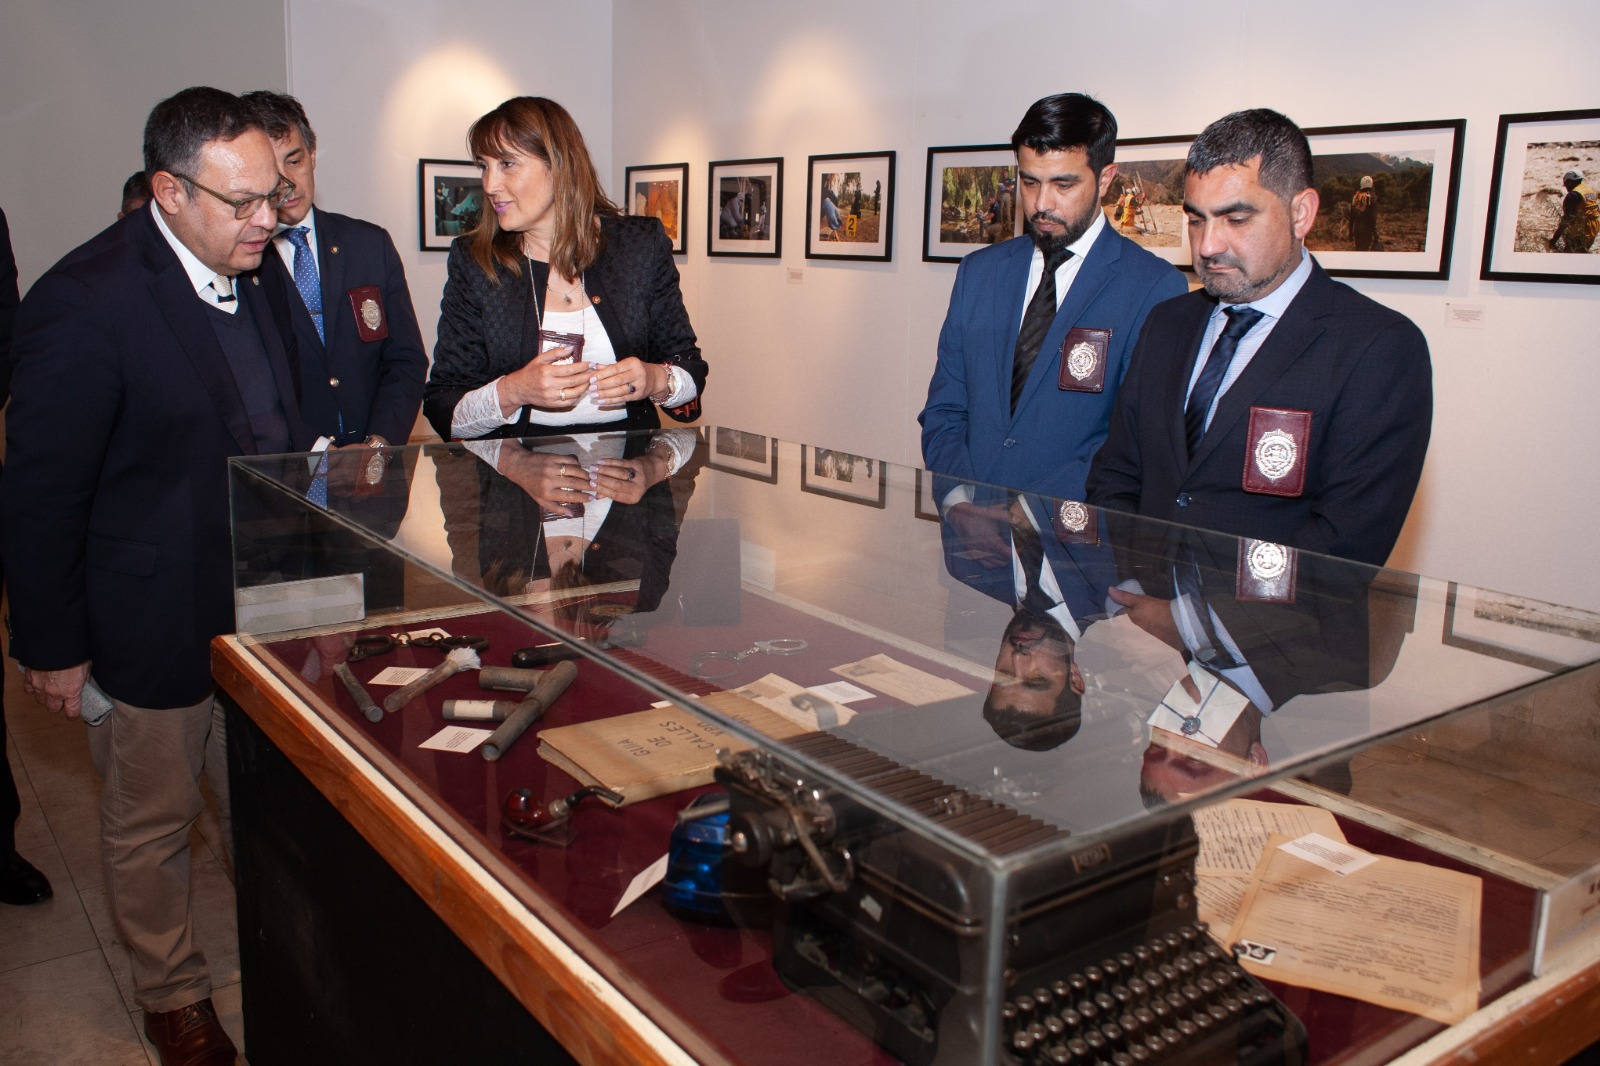 Museo Baburizza exhibe muestra fotográfica de la PDI “90 años en la escena del crímen”